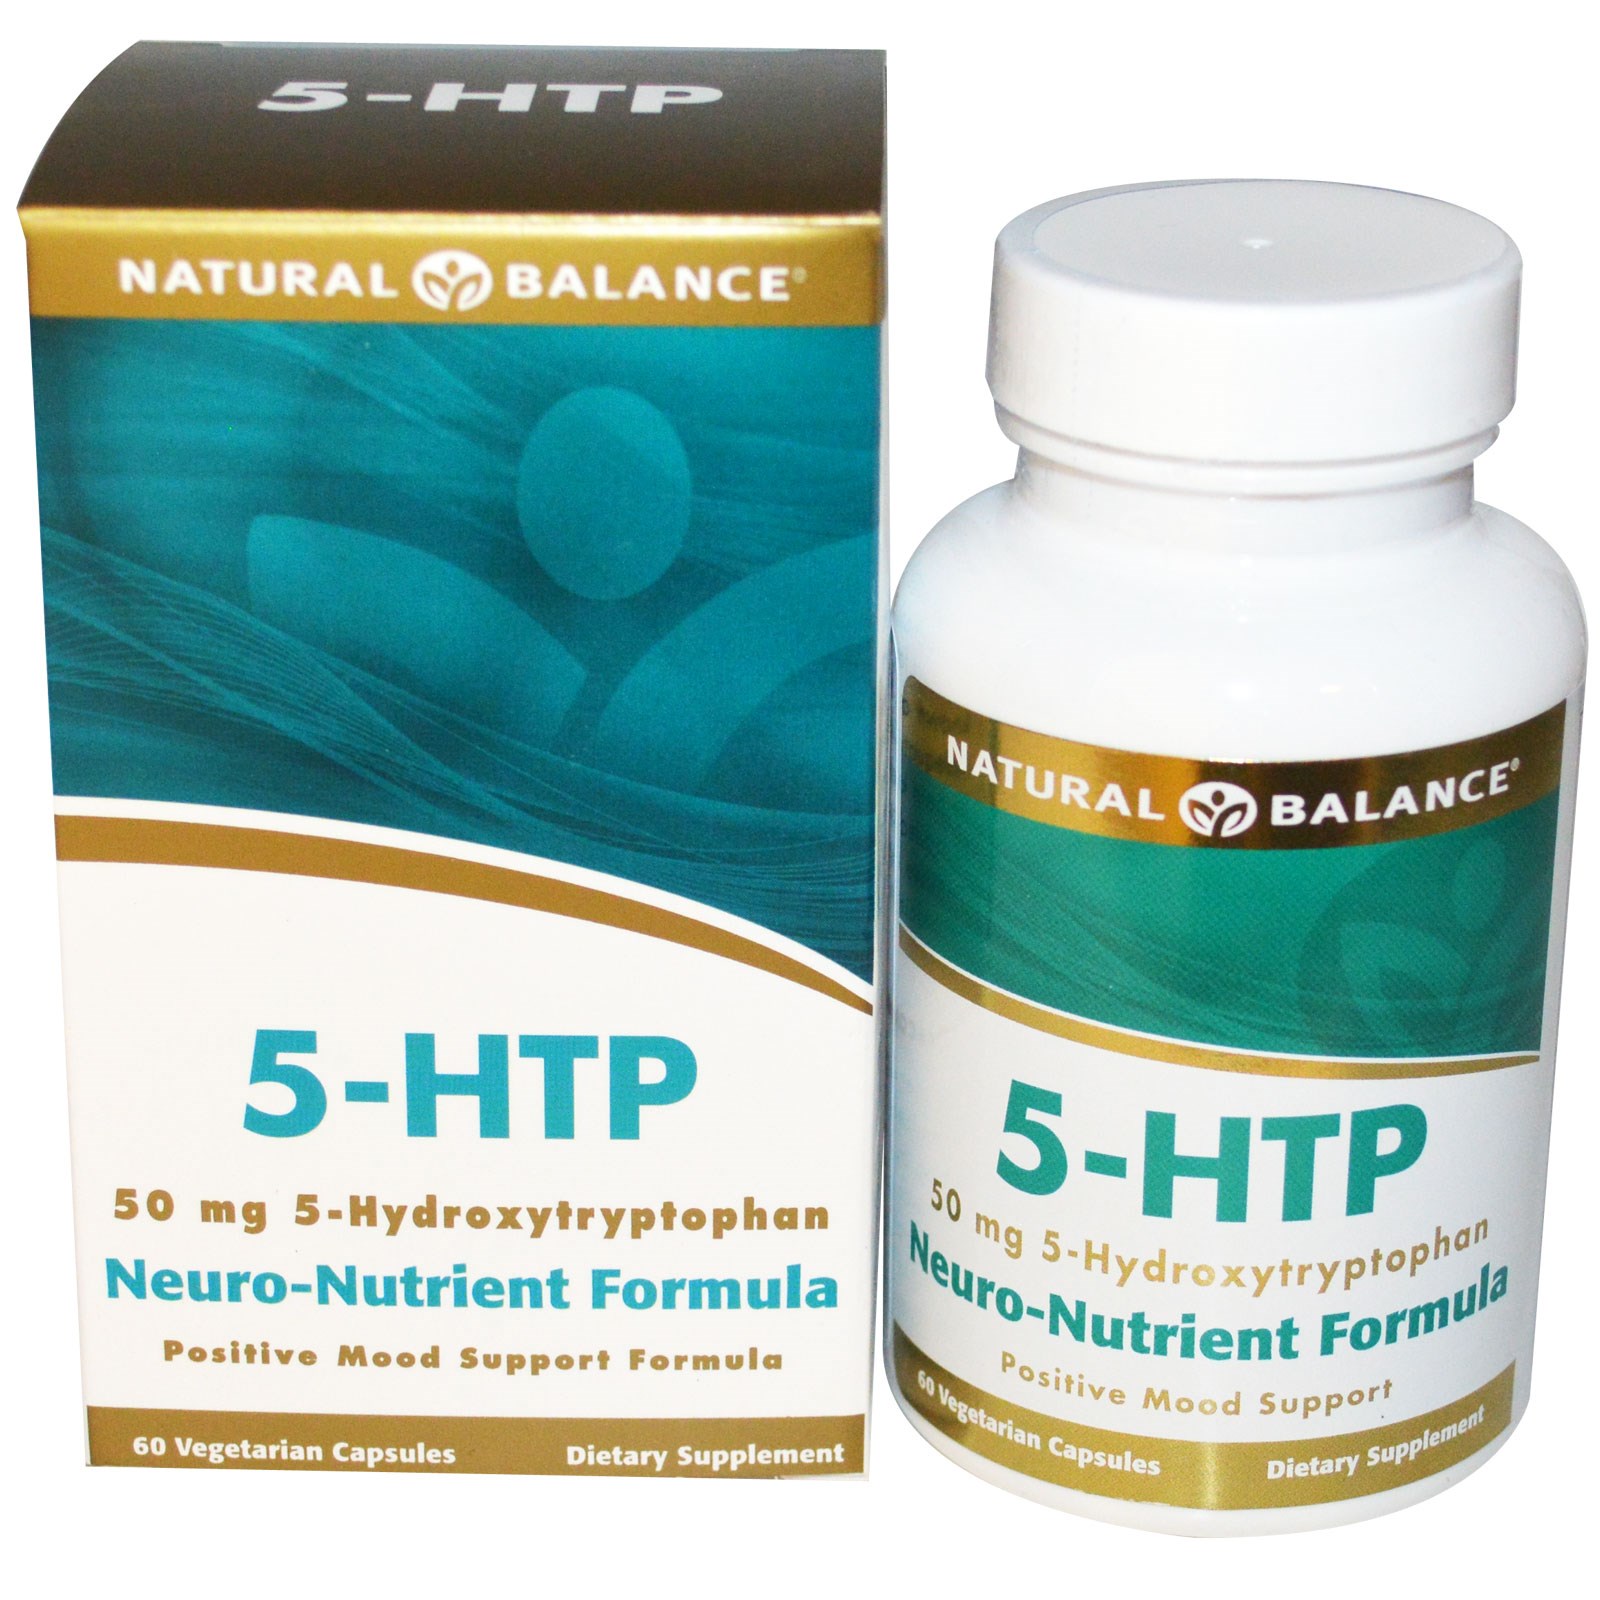 Рели баланс. 5-Htp 50mg + Vitamin b6 100 капсул. Uniforce 5-Htp 50mg + Vitamin b6 100 капсул. Natural supp 5-Htp 60 капсул. 5 Гидрокситриптофан формула.